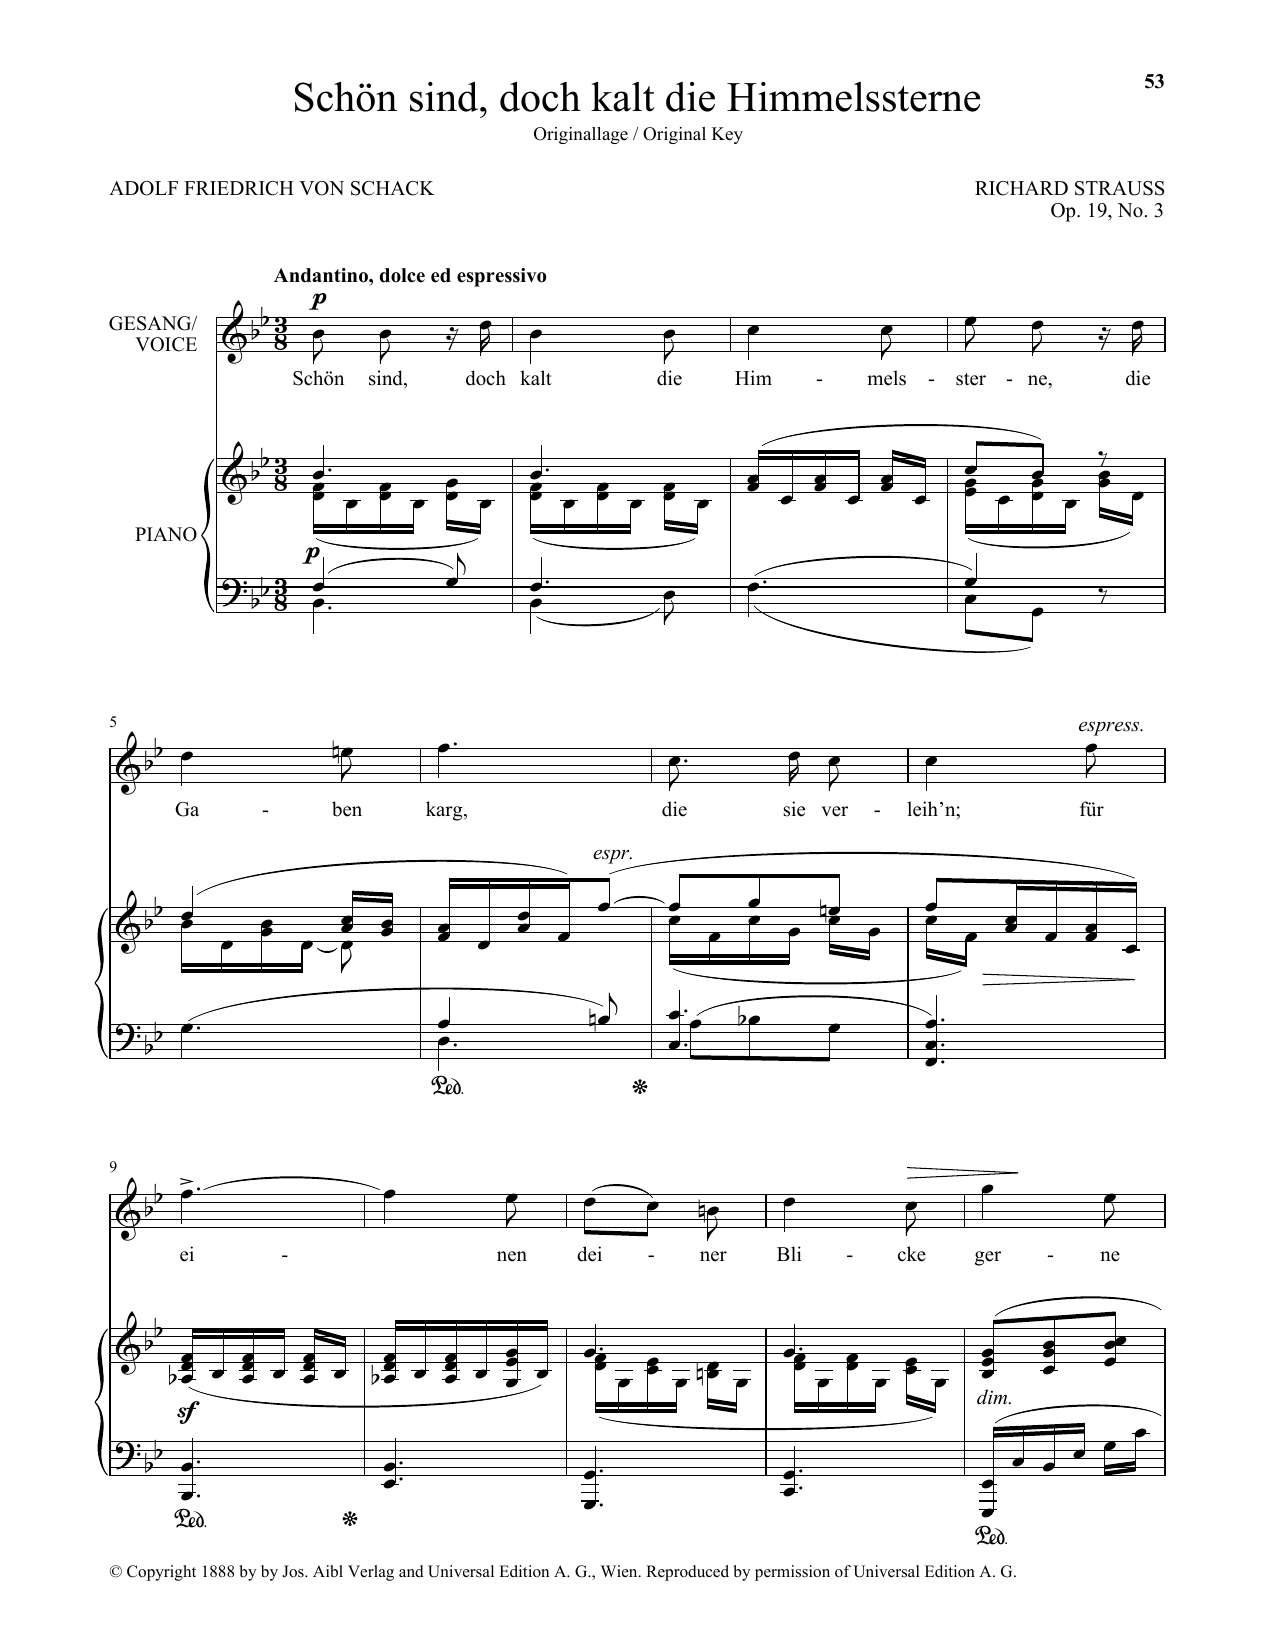 Download Richard Strauss Schon Sind, Doch Kalt Die Himmelssterne Sheet Music